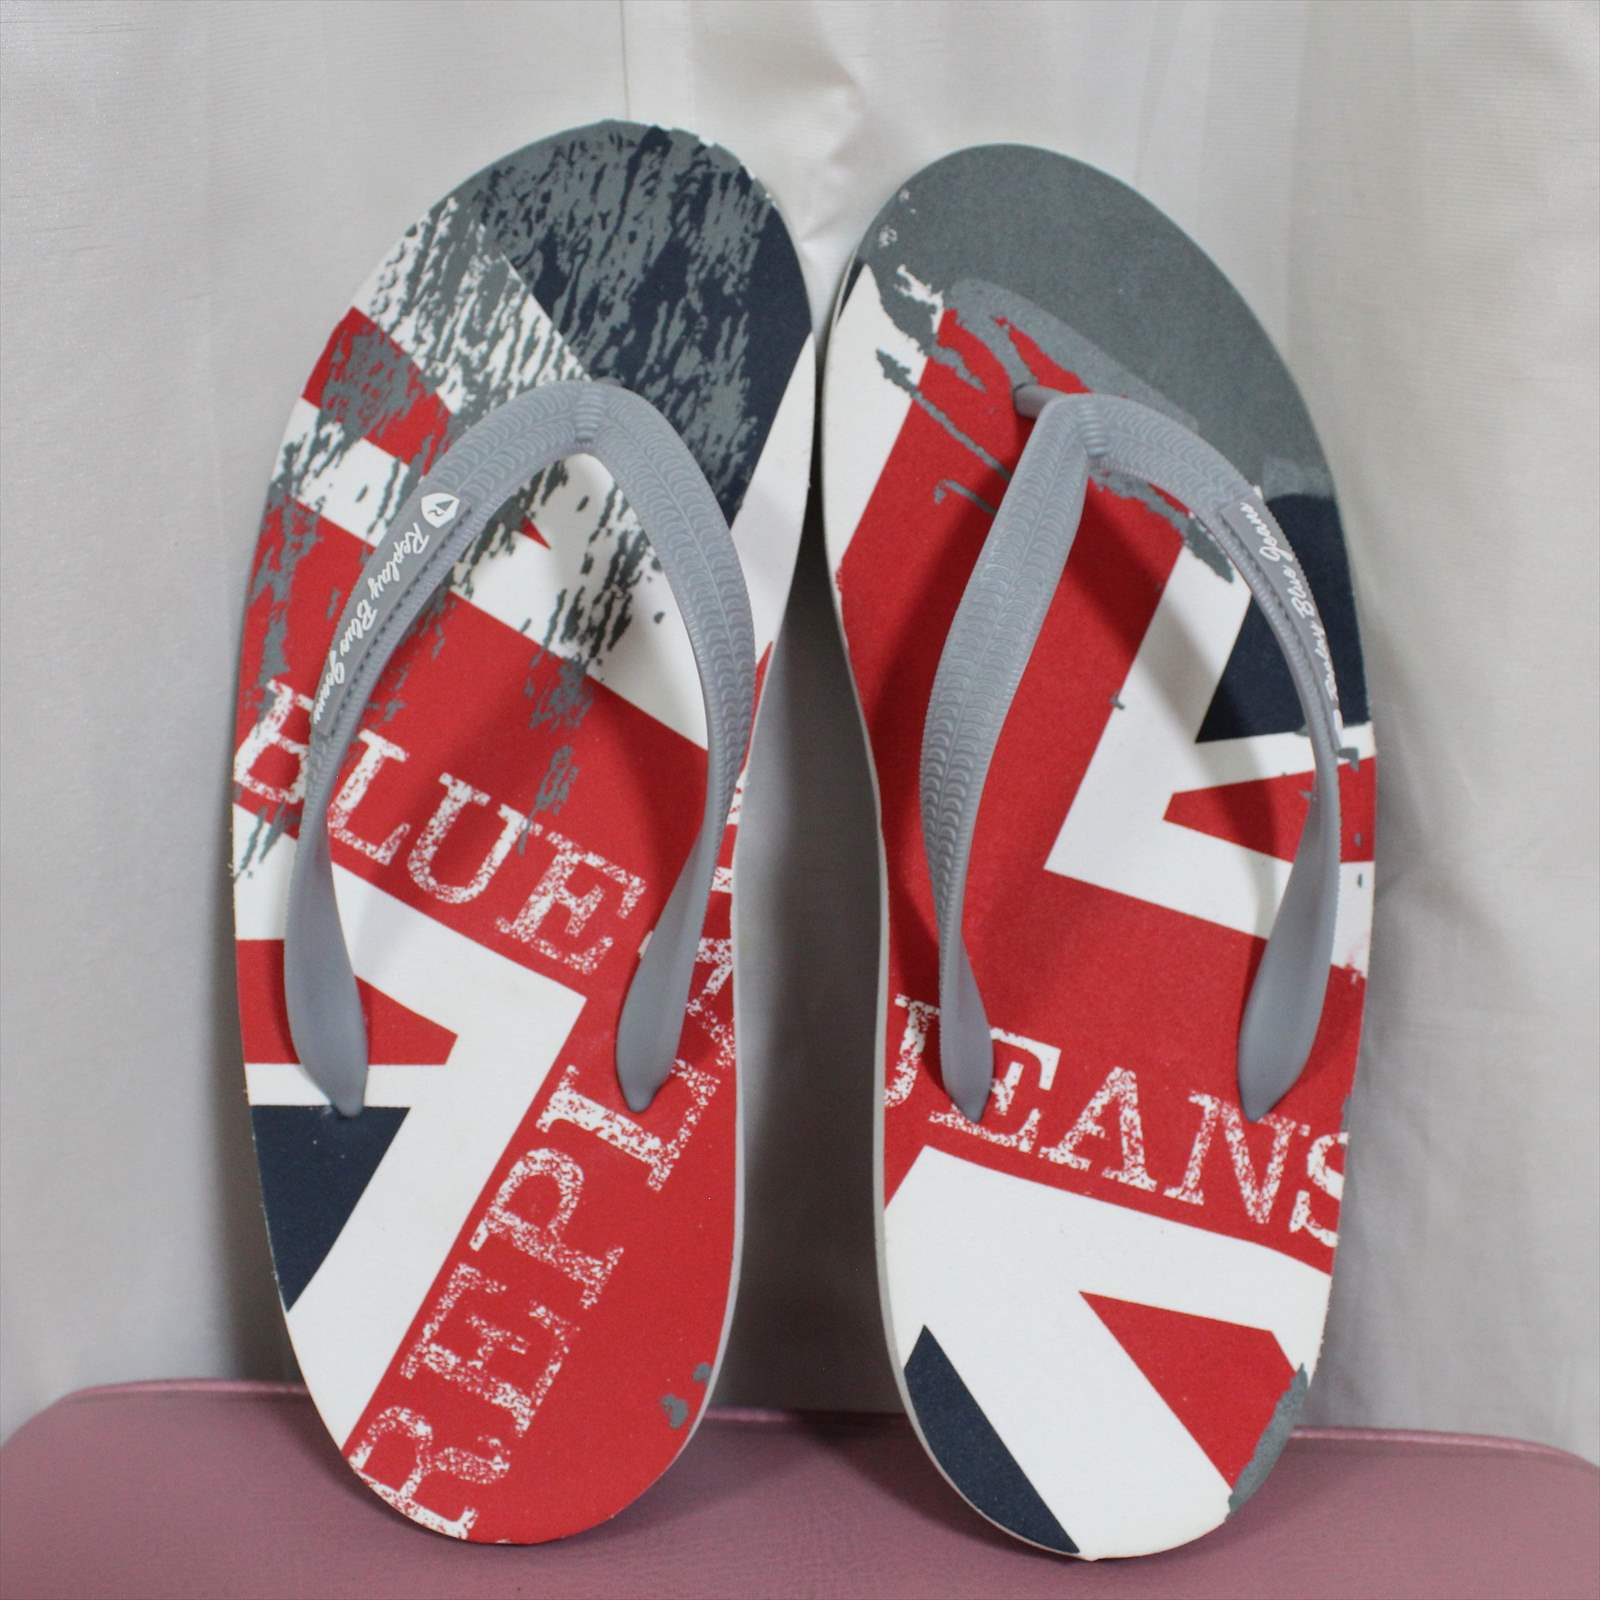 リプレイ REPLAY メンズ ビーチサンダル 028-GREY GMT06 新品 フットウェア beach sandals